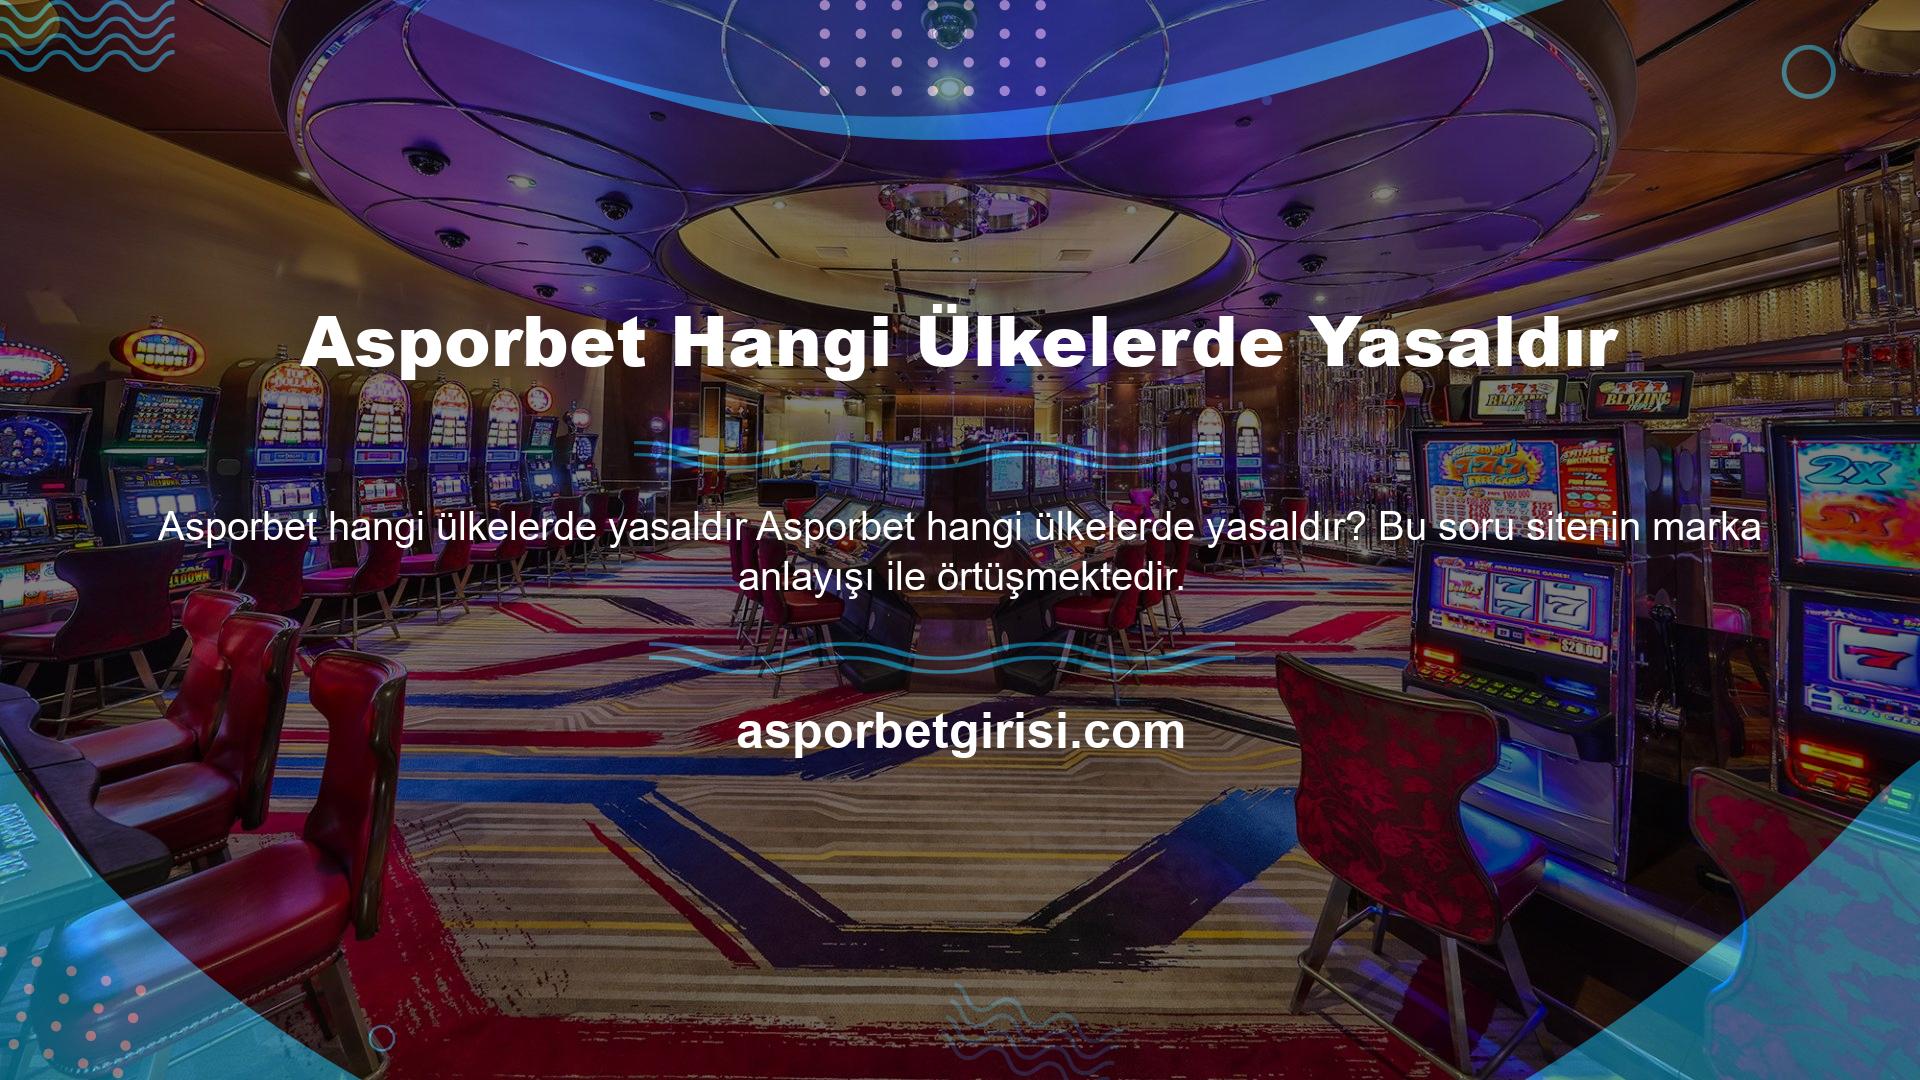 Sitenin yasallığı nedeniyle sadece Türkiye pazarında değil, uluslararası bahis pazarında da öne çıkmakta ve birçok ülkede bahis ve casino konusu ile ilgili ticari faaliyetlerini sürdürmektedir